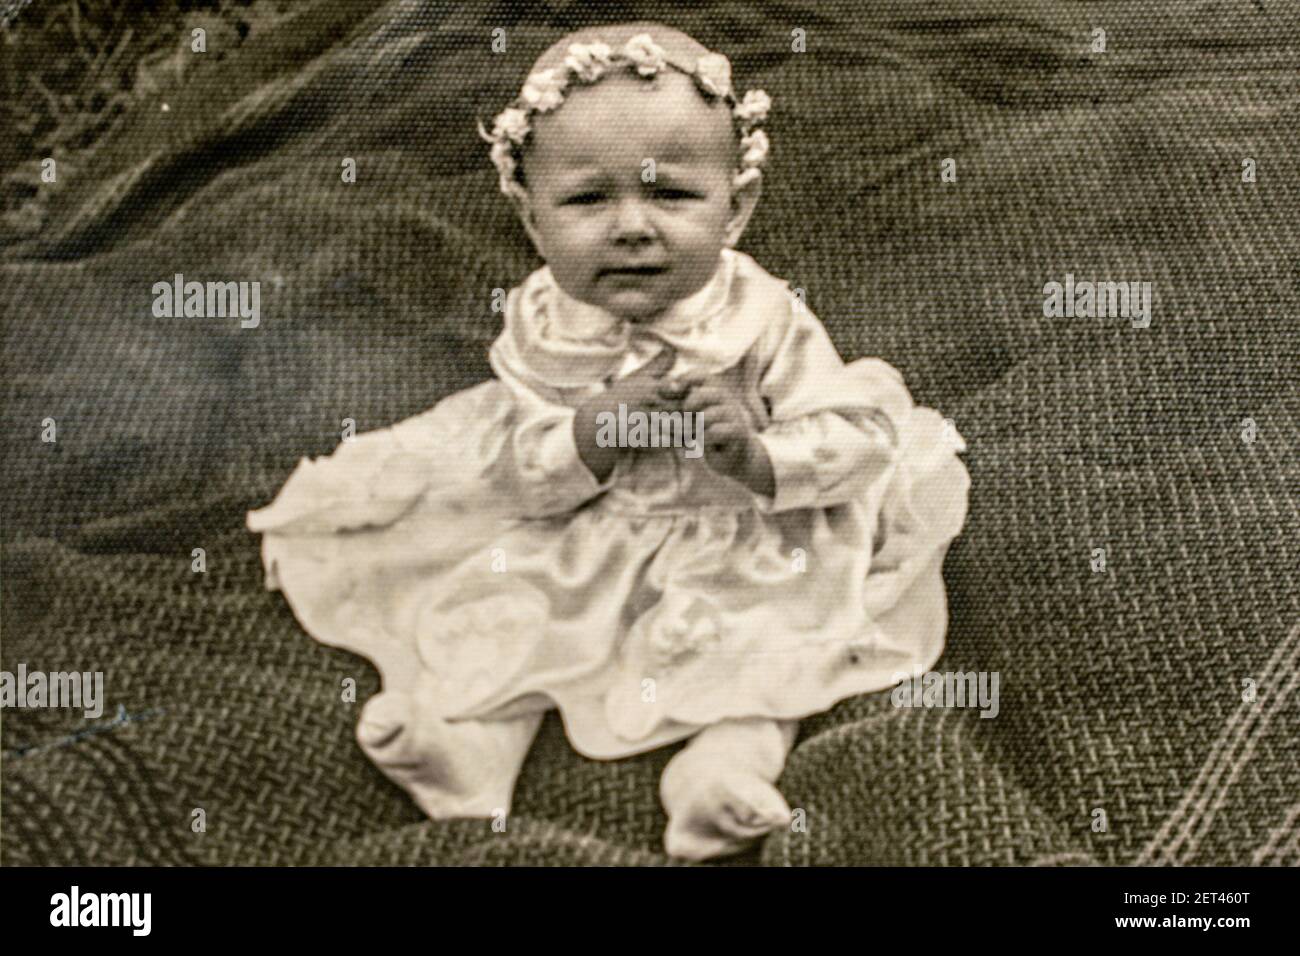 Lettonie - VERS les années 1940 : portrait de la petite fille en studio. Archive vintage photographie de l'époque Art déco Banque D'Images